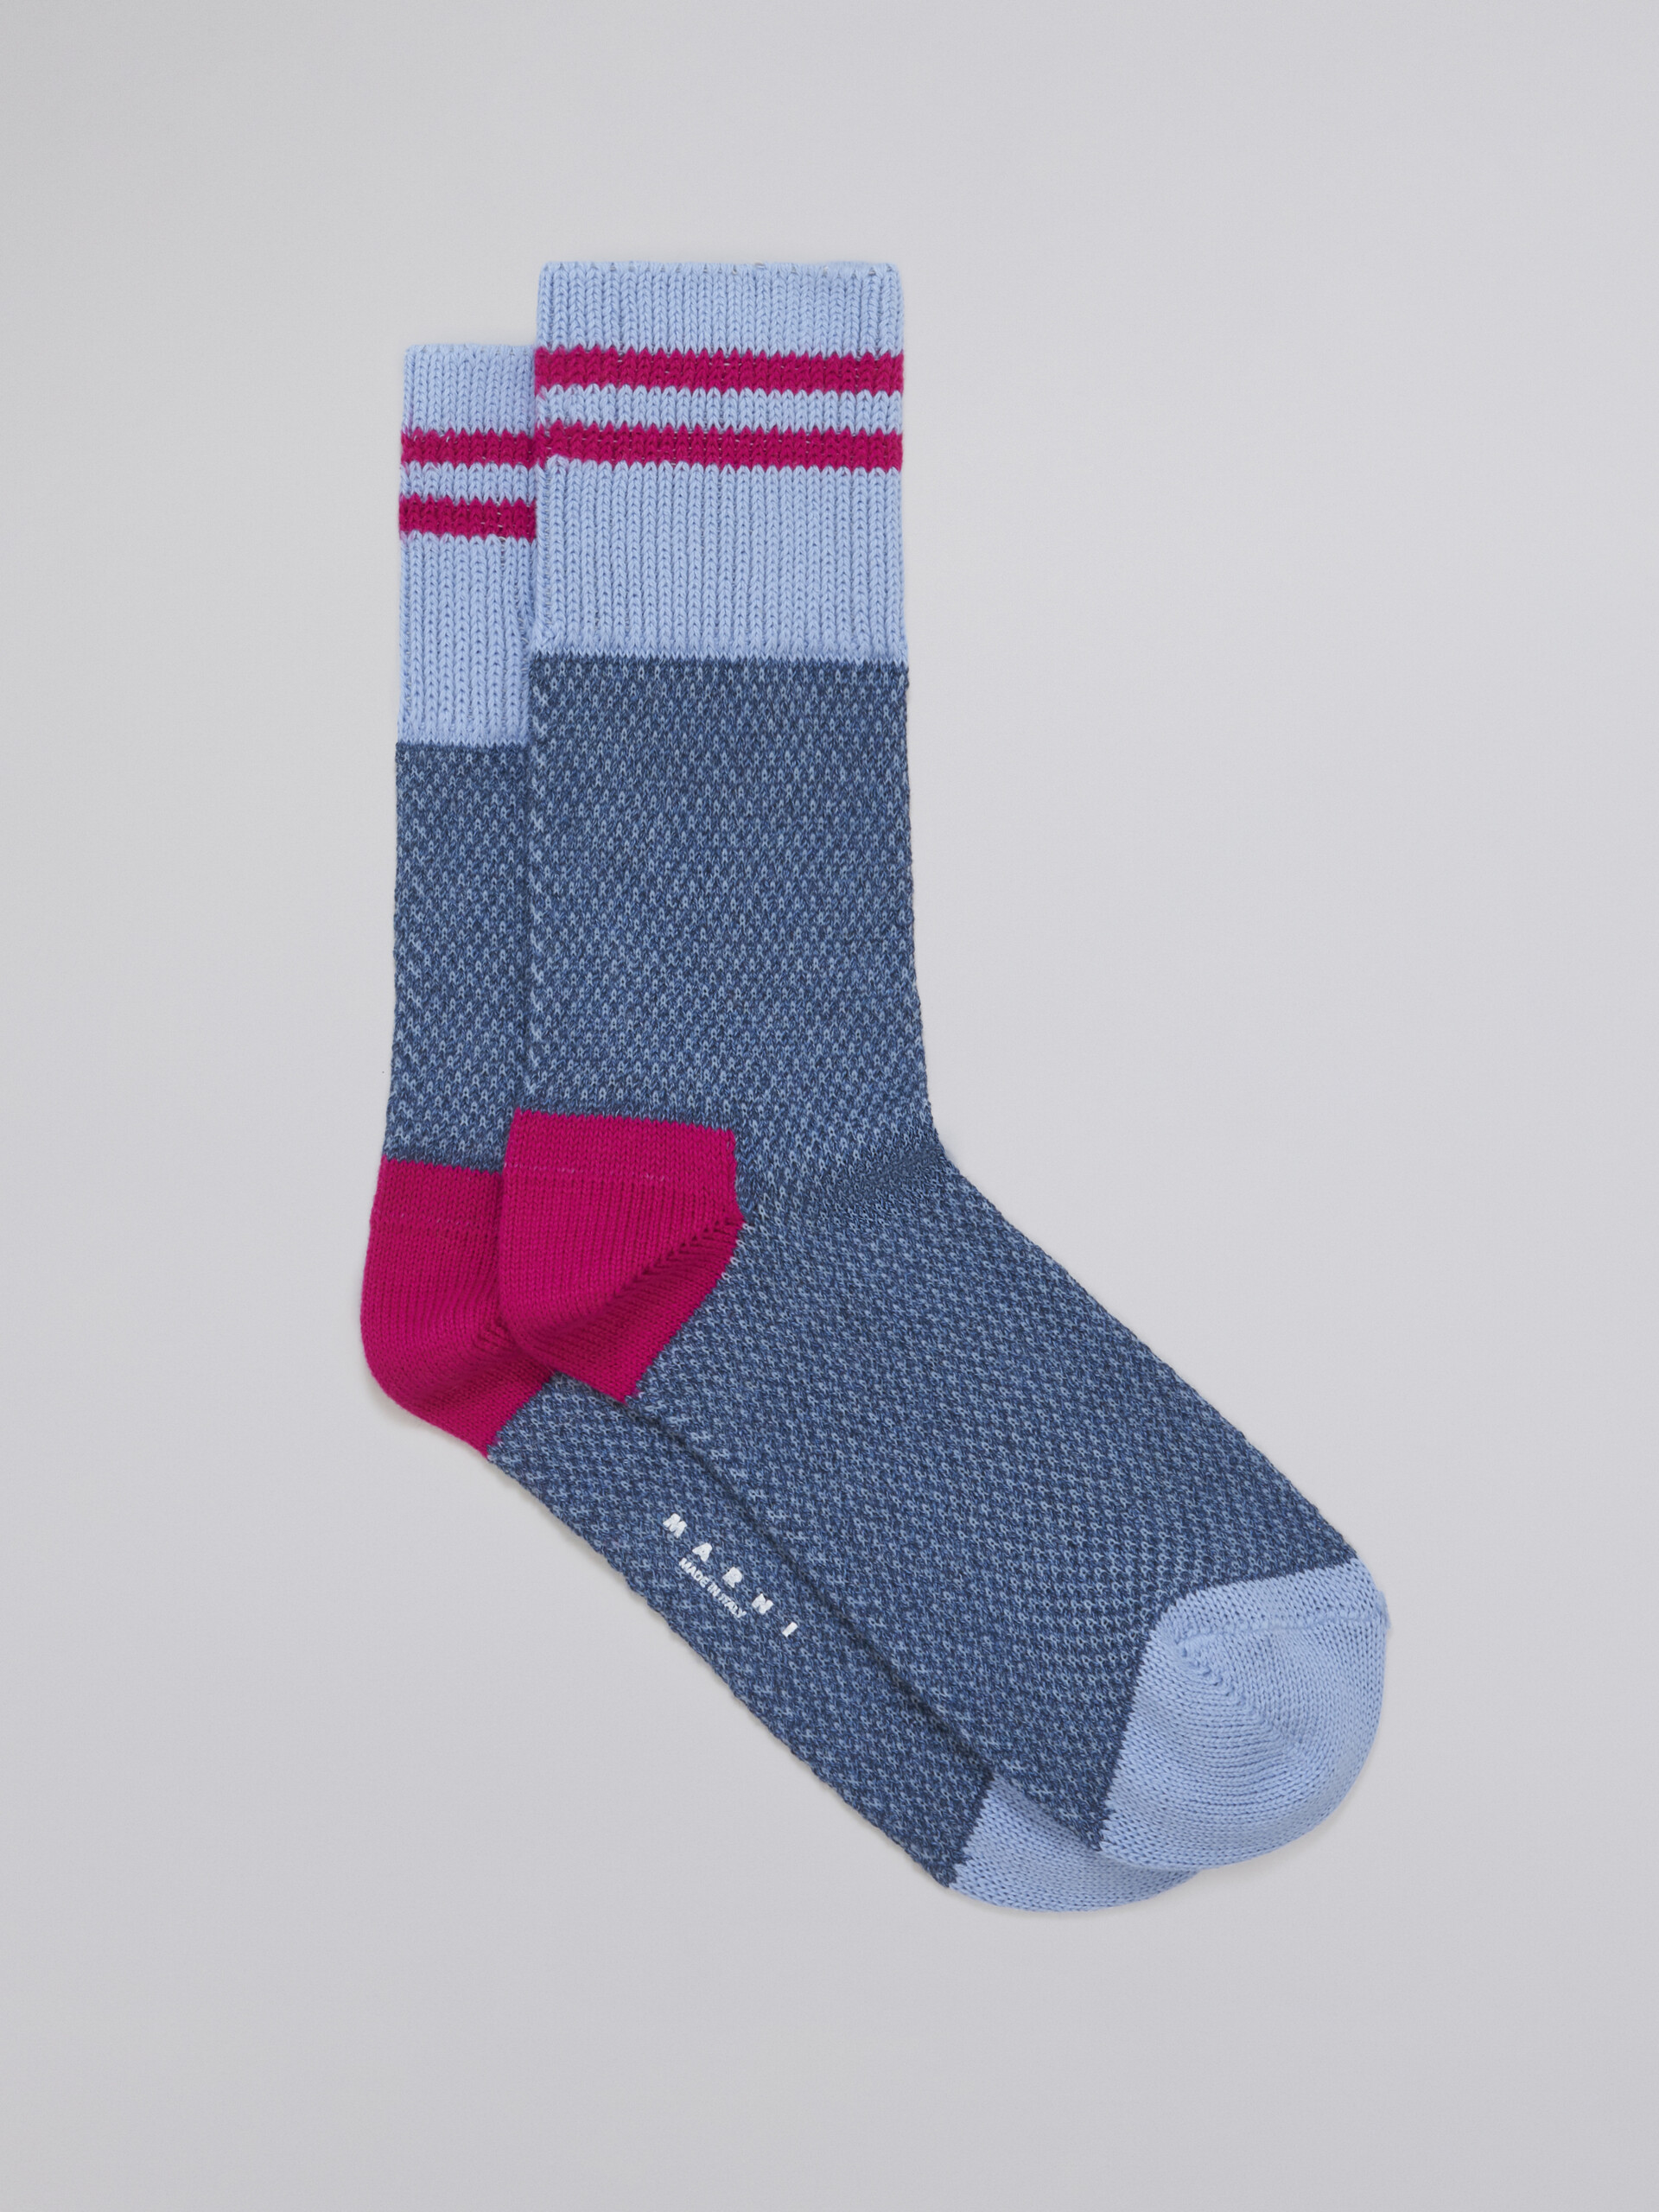 pale blue mouliné cotton sock - Socks - Image 1